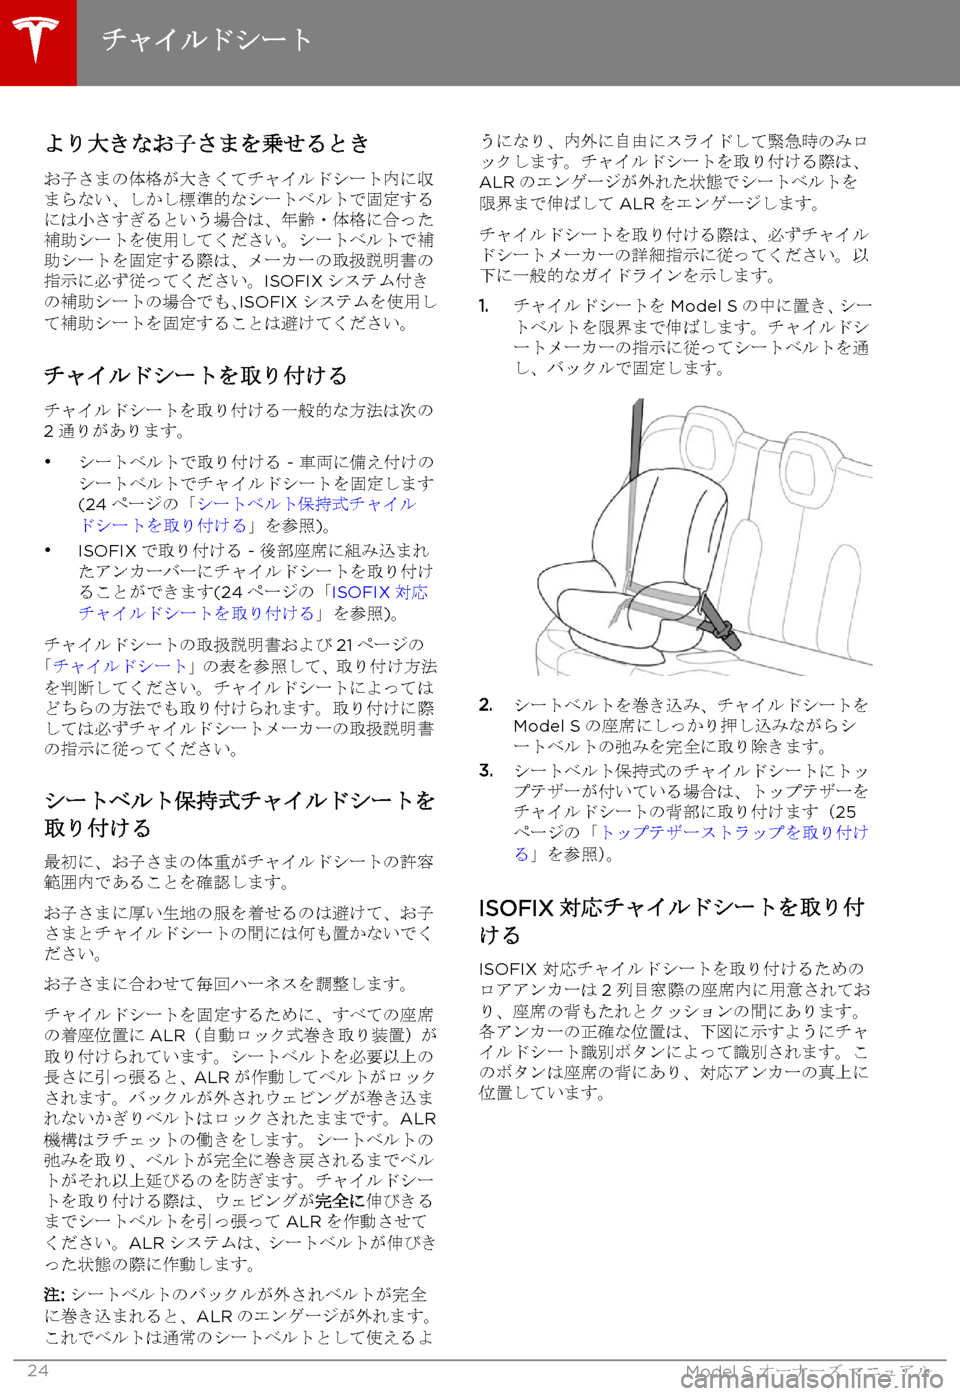 TESLA MODEL S 2015  取扱説明書 (in Japanese)  より大きなお子さまを乗せるとき
お子さまの体格が大きくてチャイルドシート内に収まらない、しかし標準的なシートベルトで固定するには小さす�